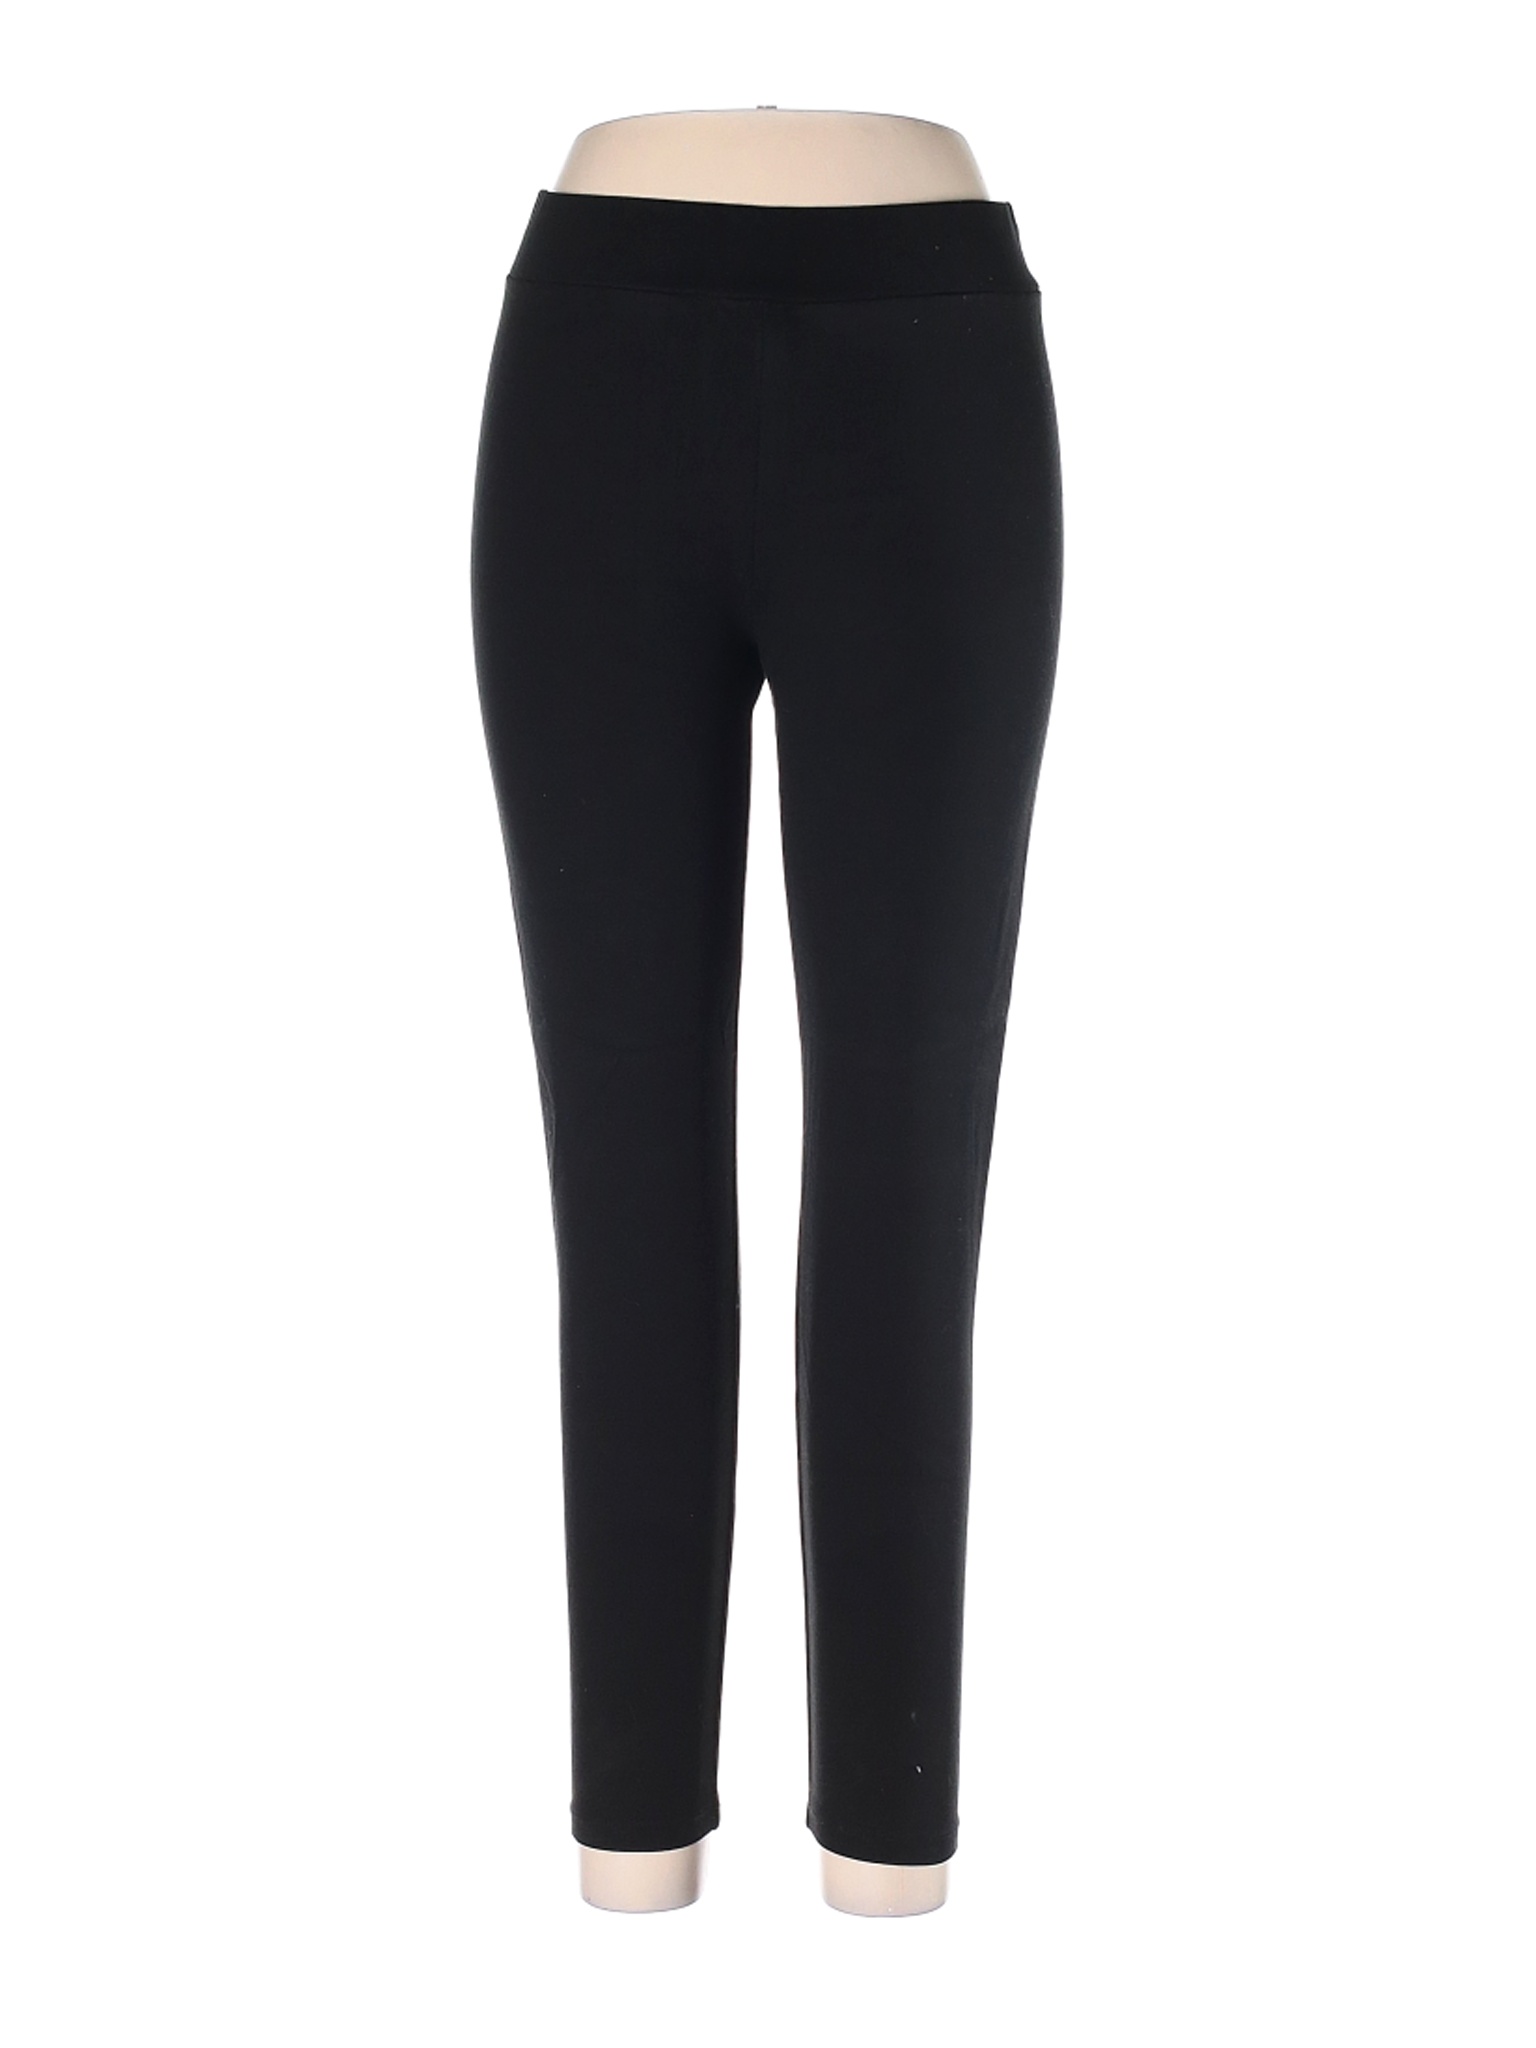 Lou & Grey Women Black Casual Pants L | eBay